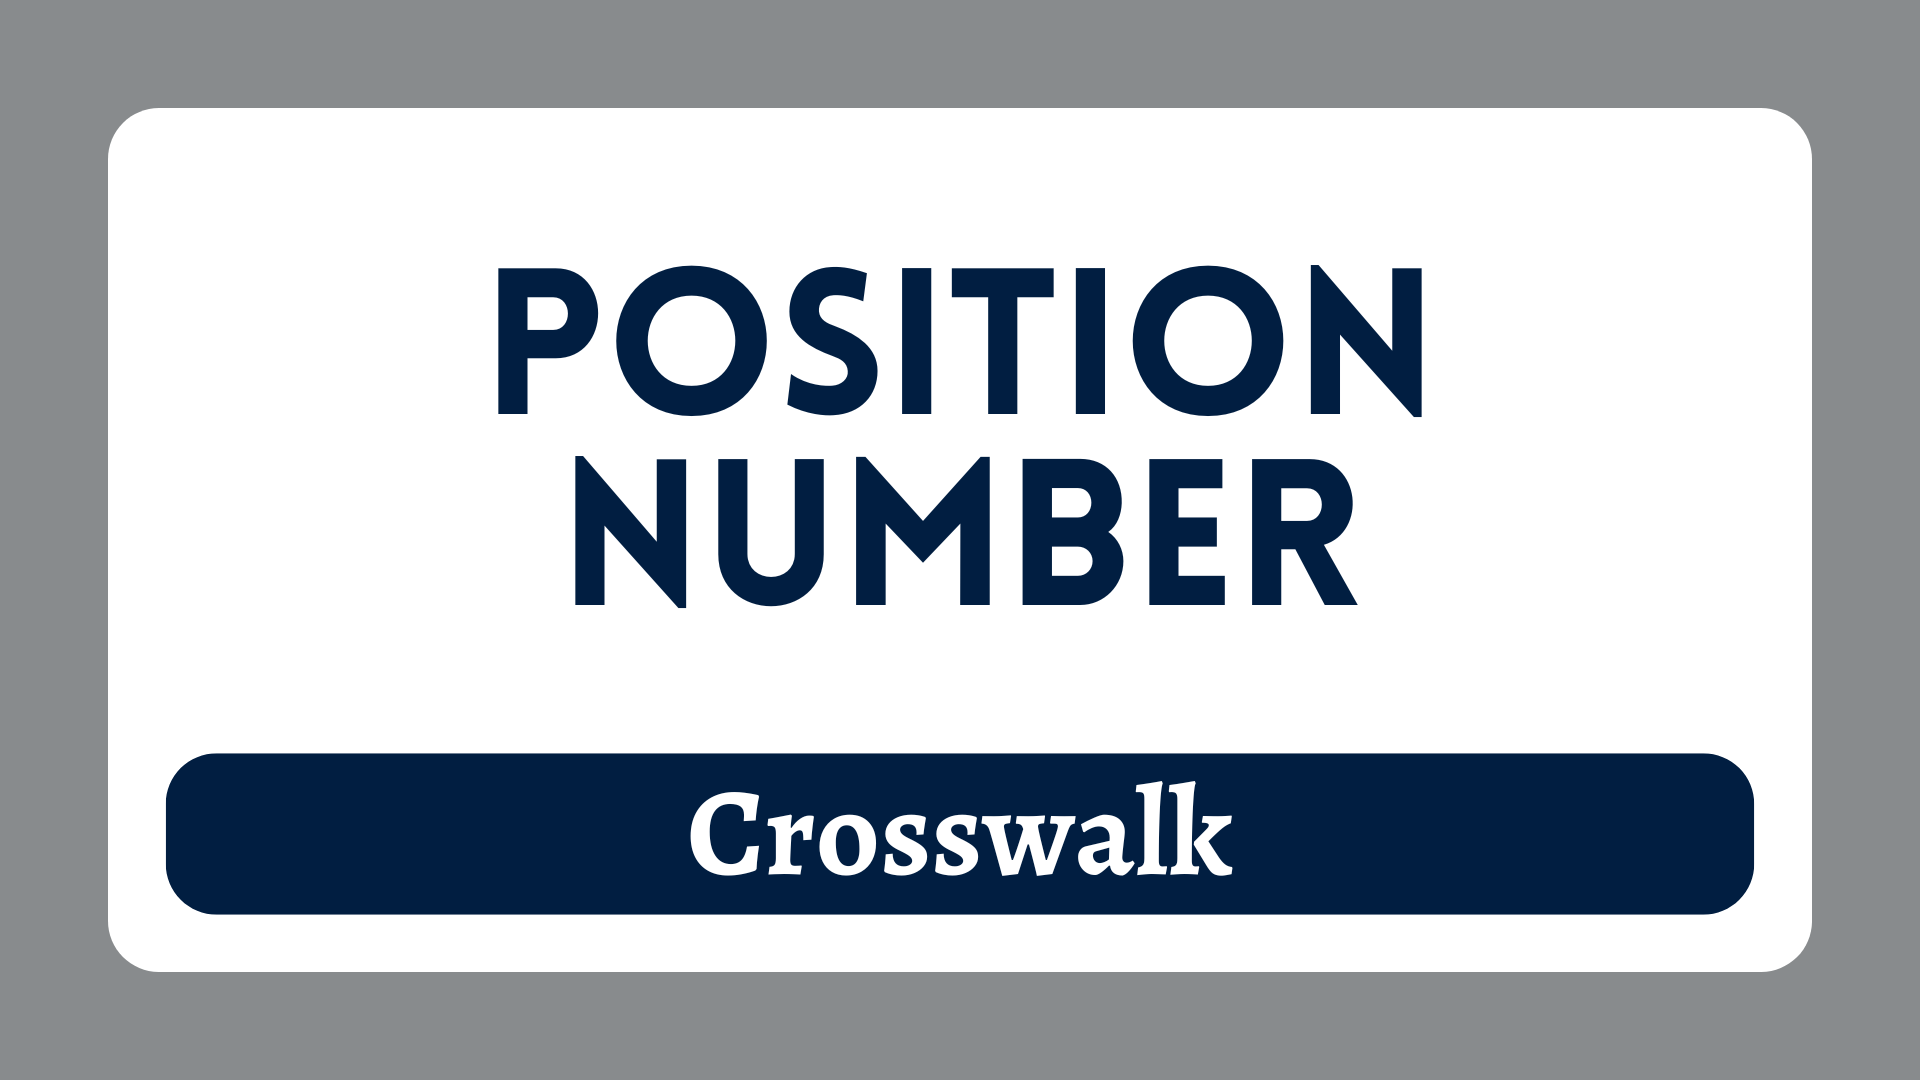 Position Number Crosswalk Tile